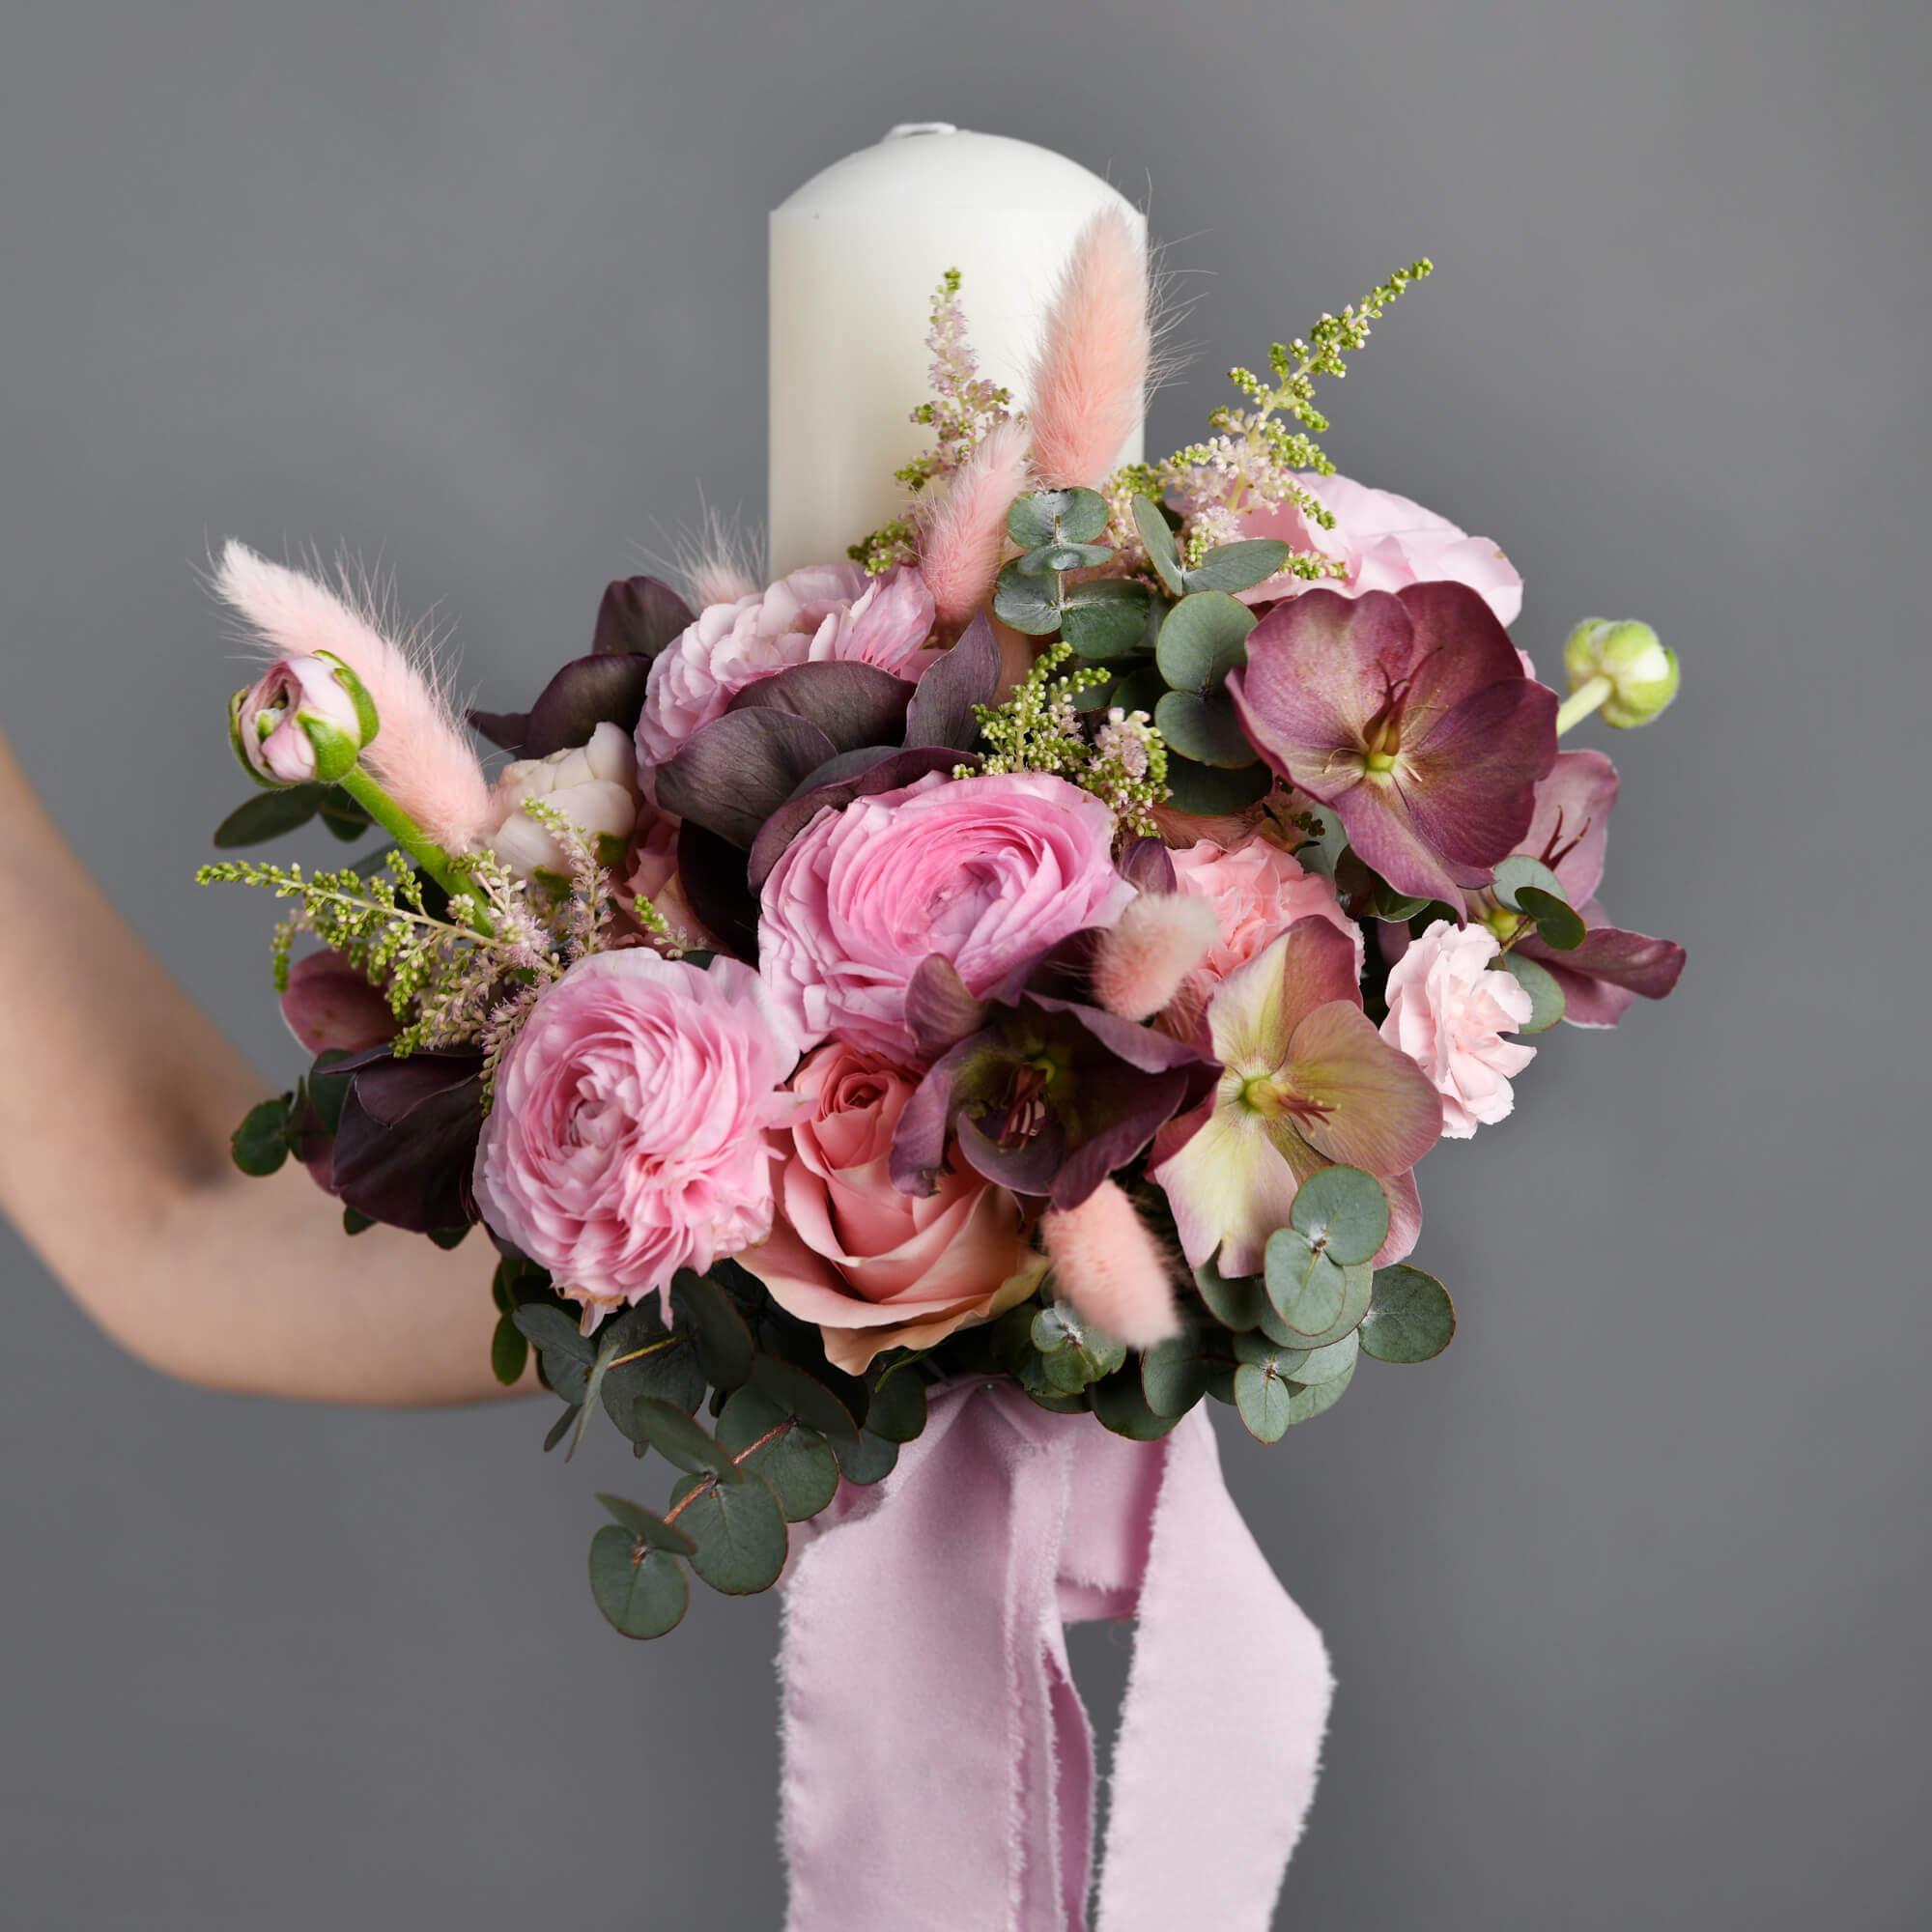 Complete pink wedding arrangement package